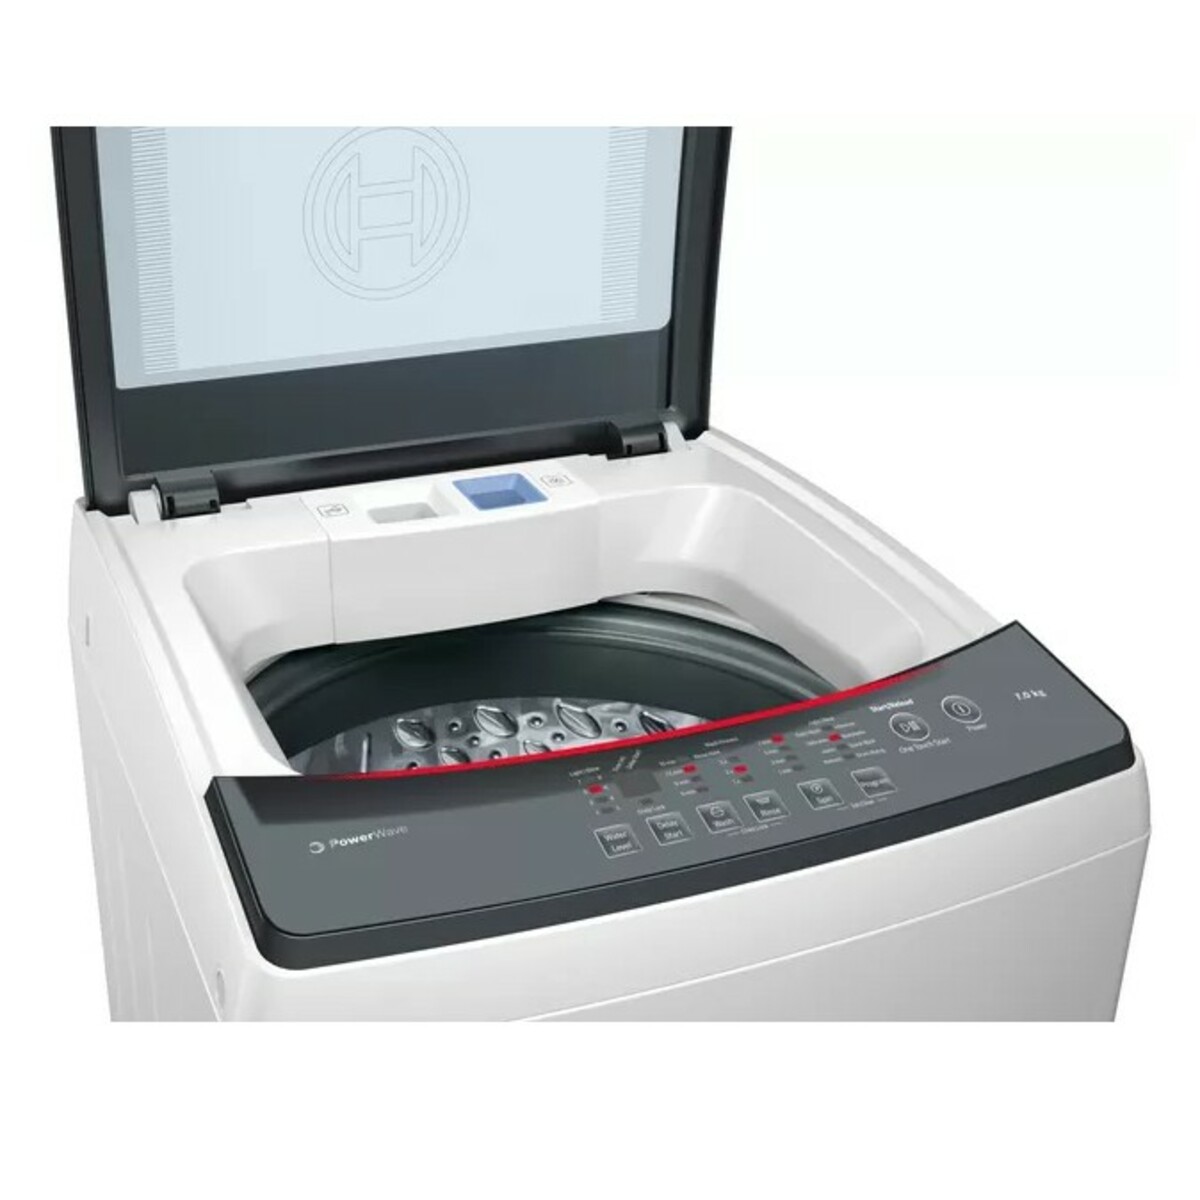 Bosch Washing Machine Top Loading Washing Machine WOE704W1IN 7kg